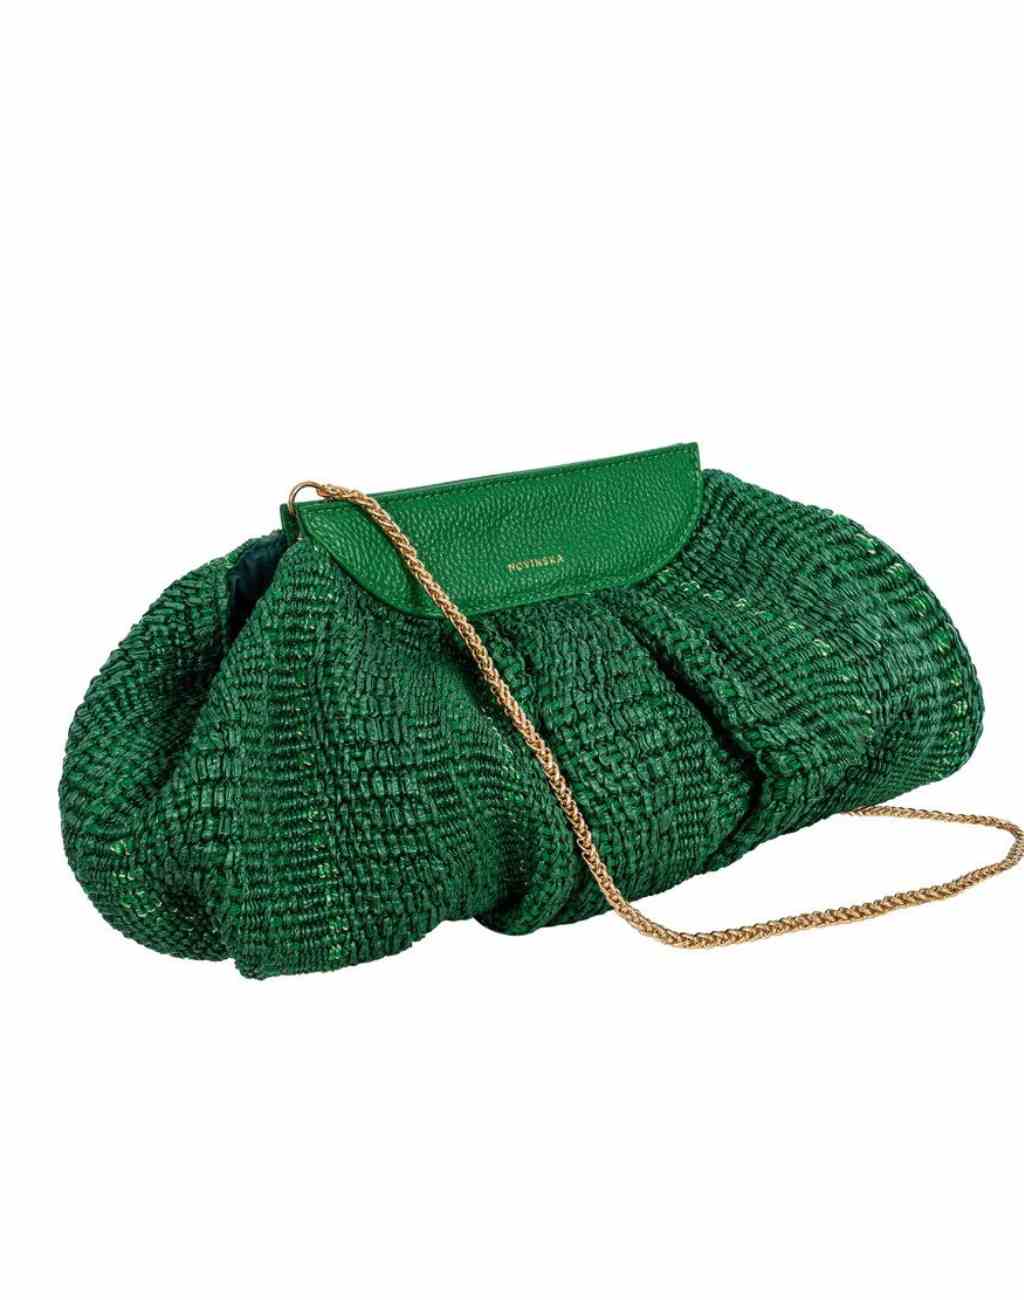 Raffia Clutch Bag in Palm Green